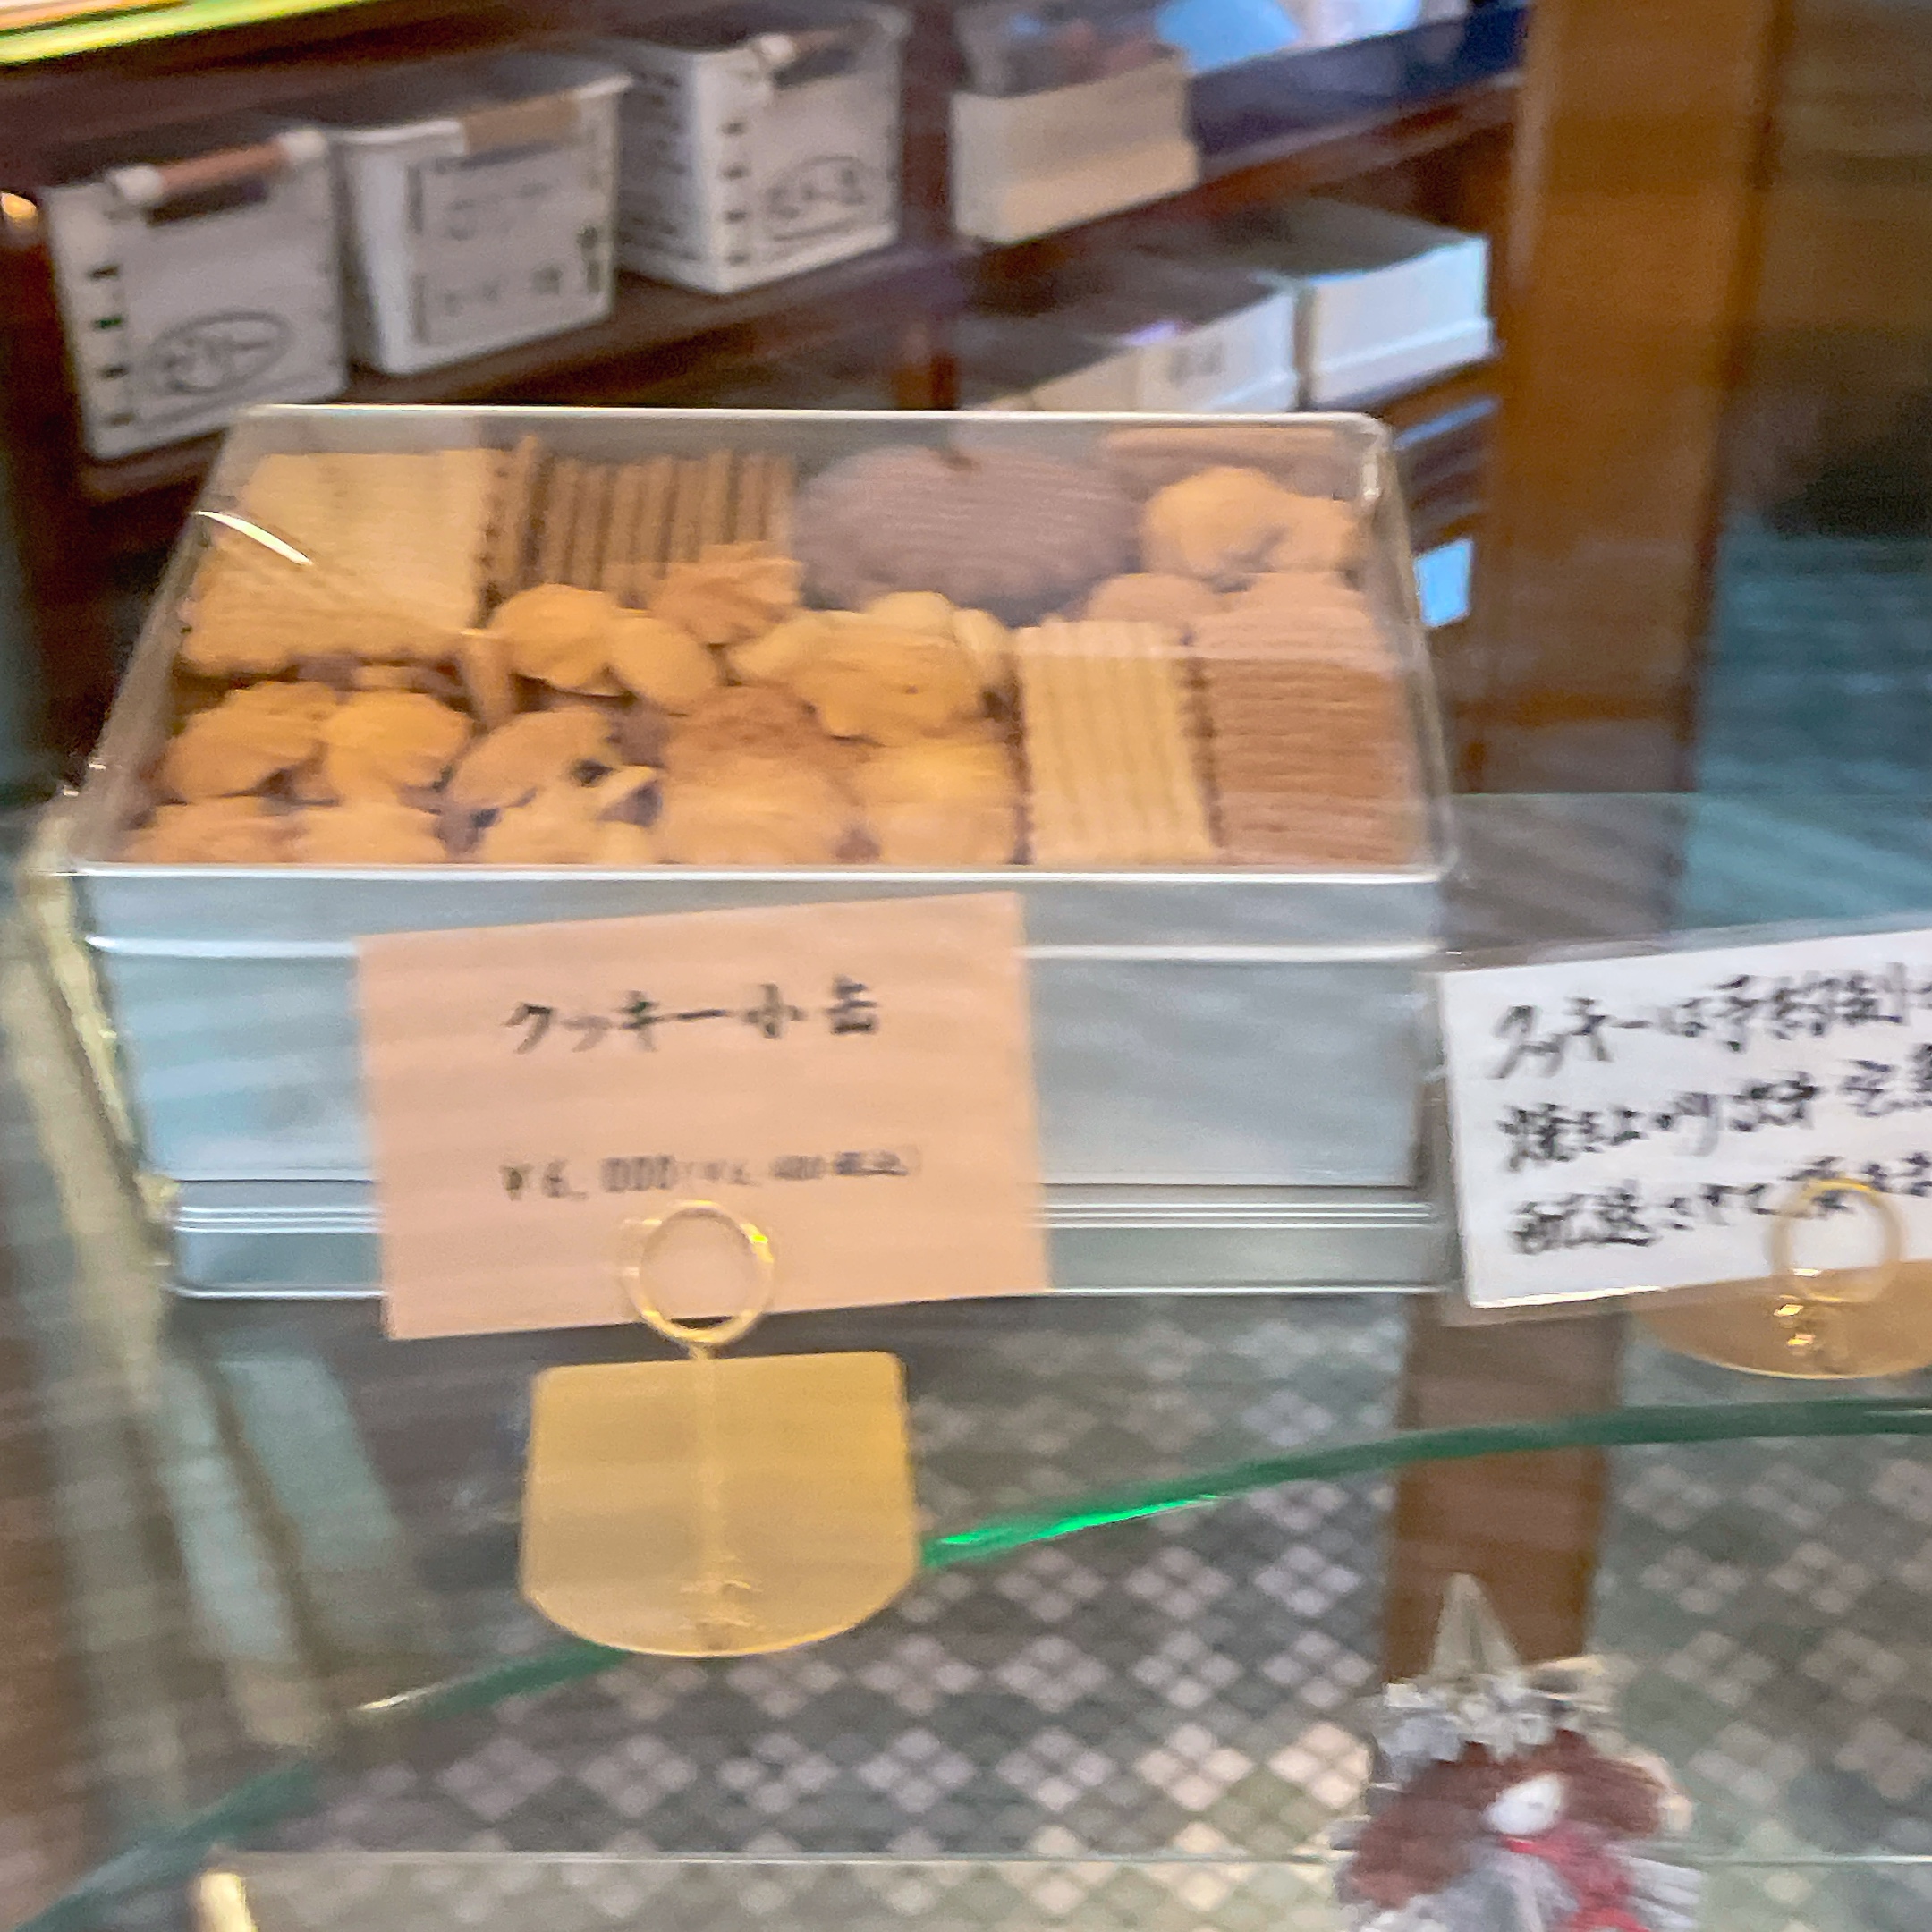 京都 村上開新堂のクッキー缶の予約に出かけました〜注文方法やお値段